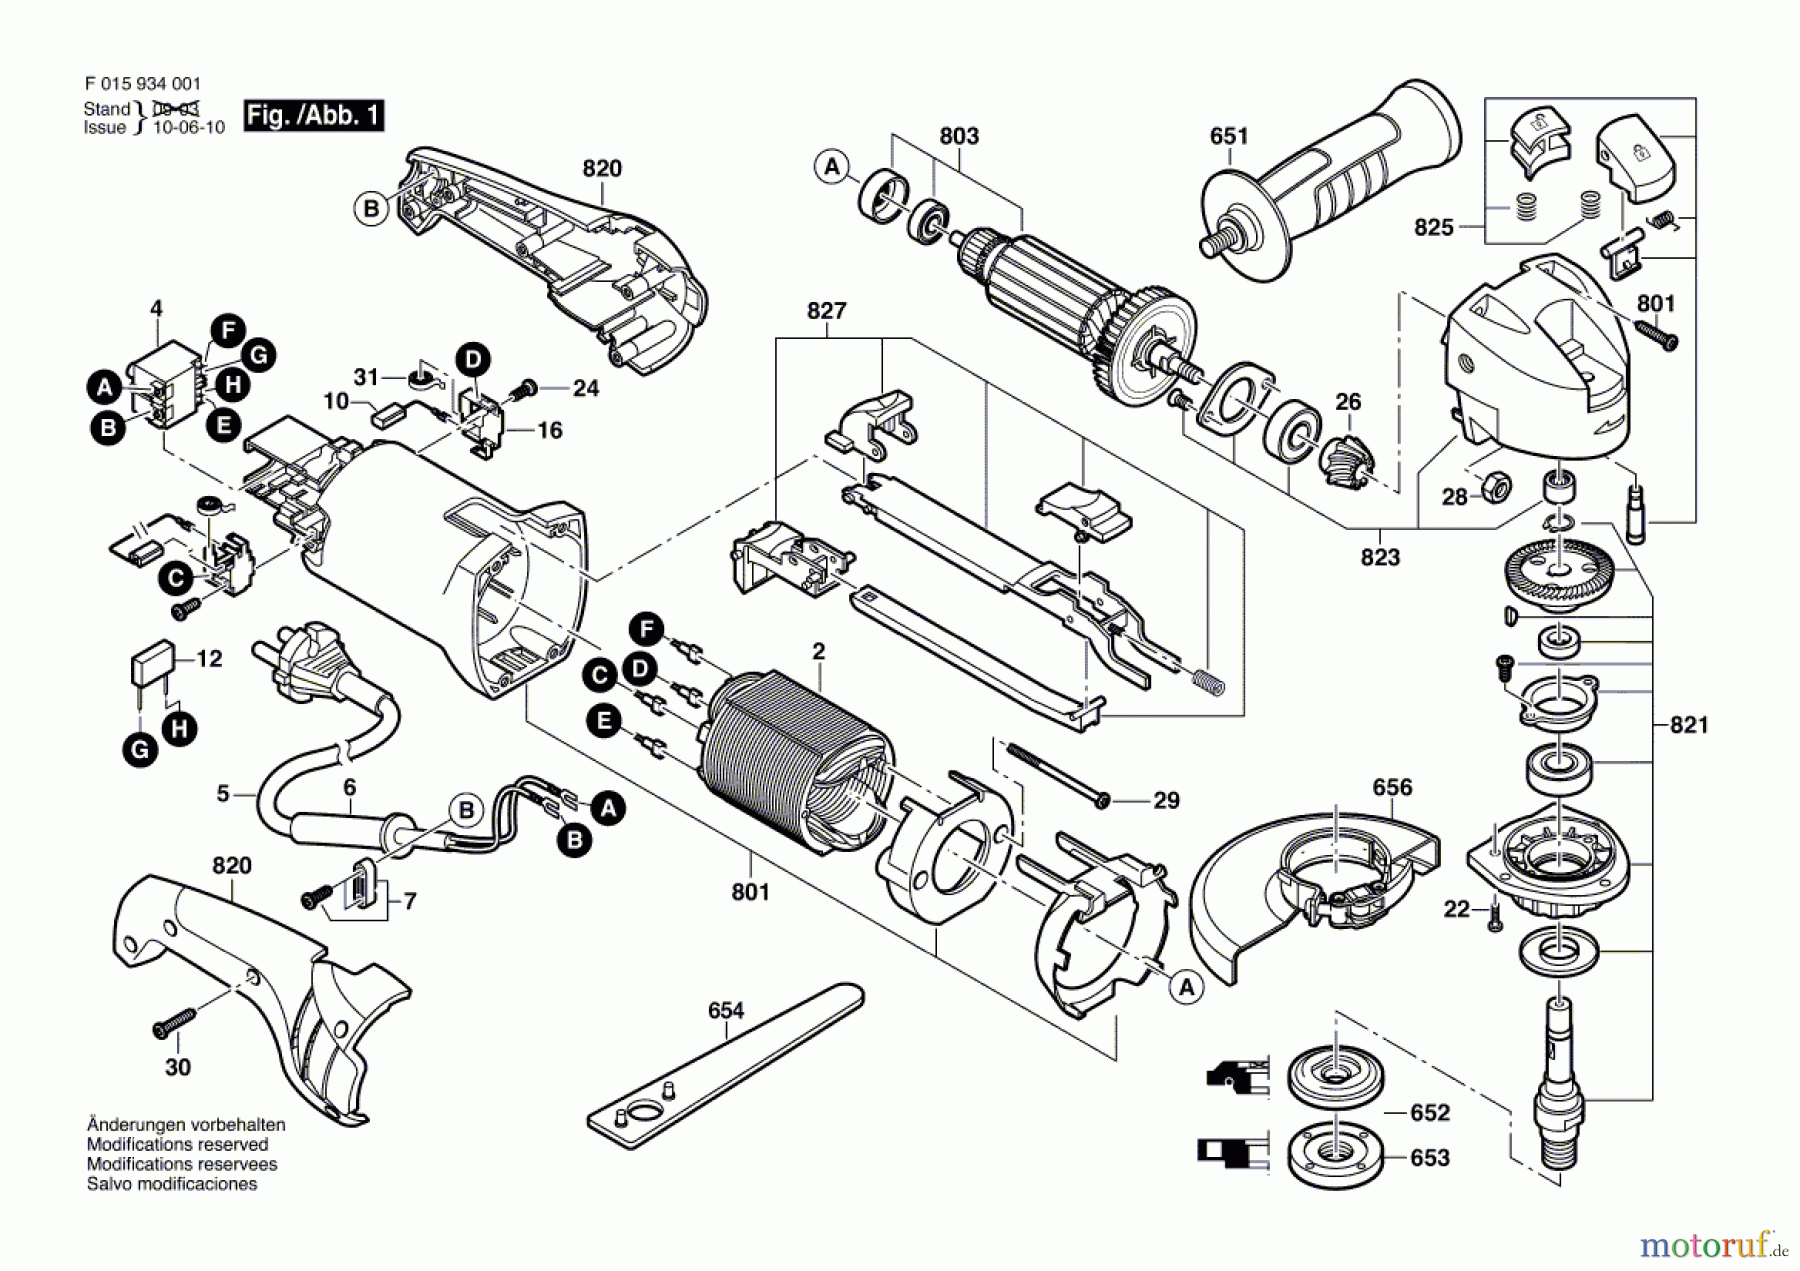  Bosch Werkzeug Winkelschleifer 9345 Seite 1